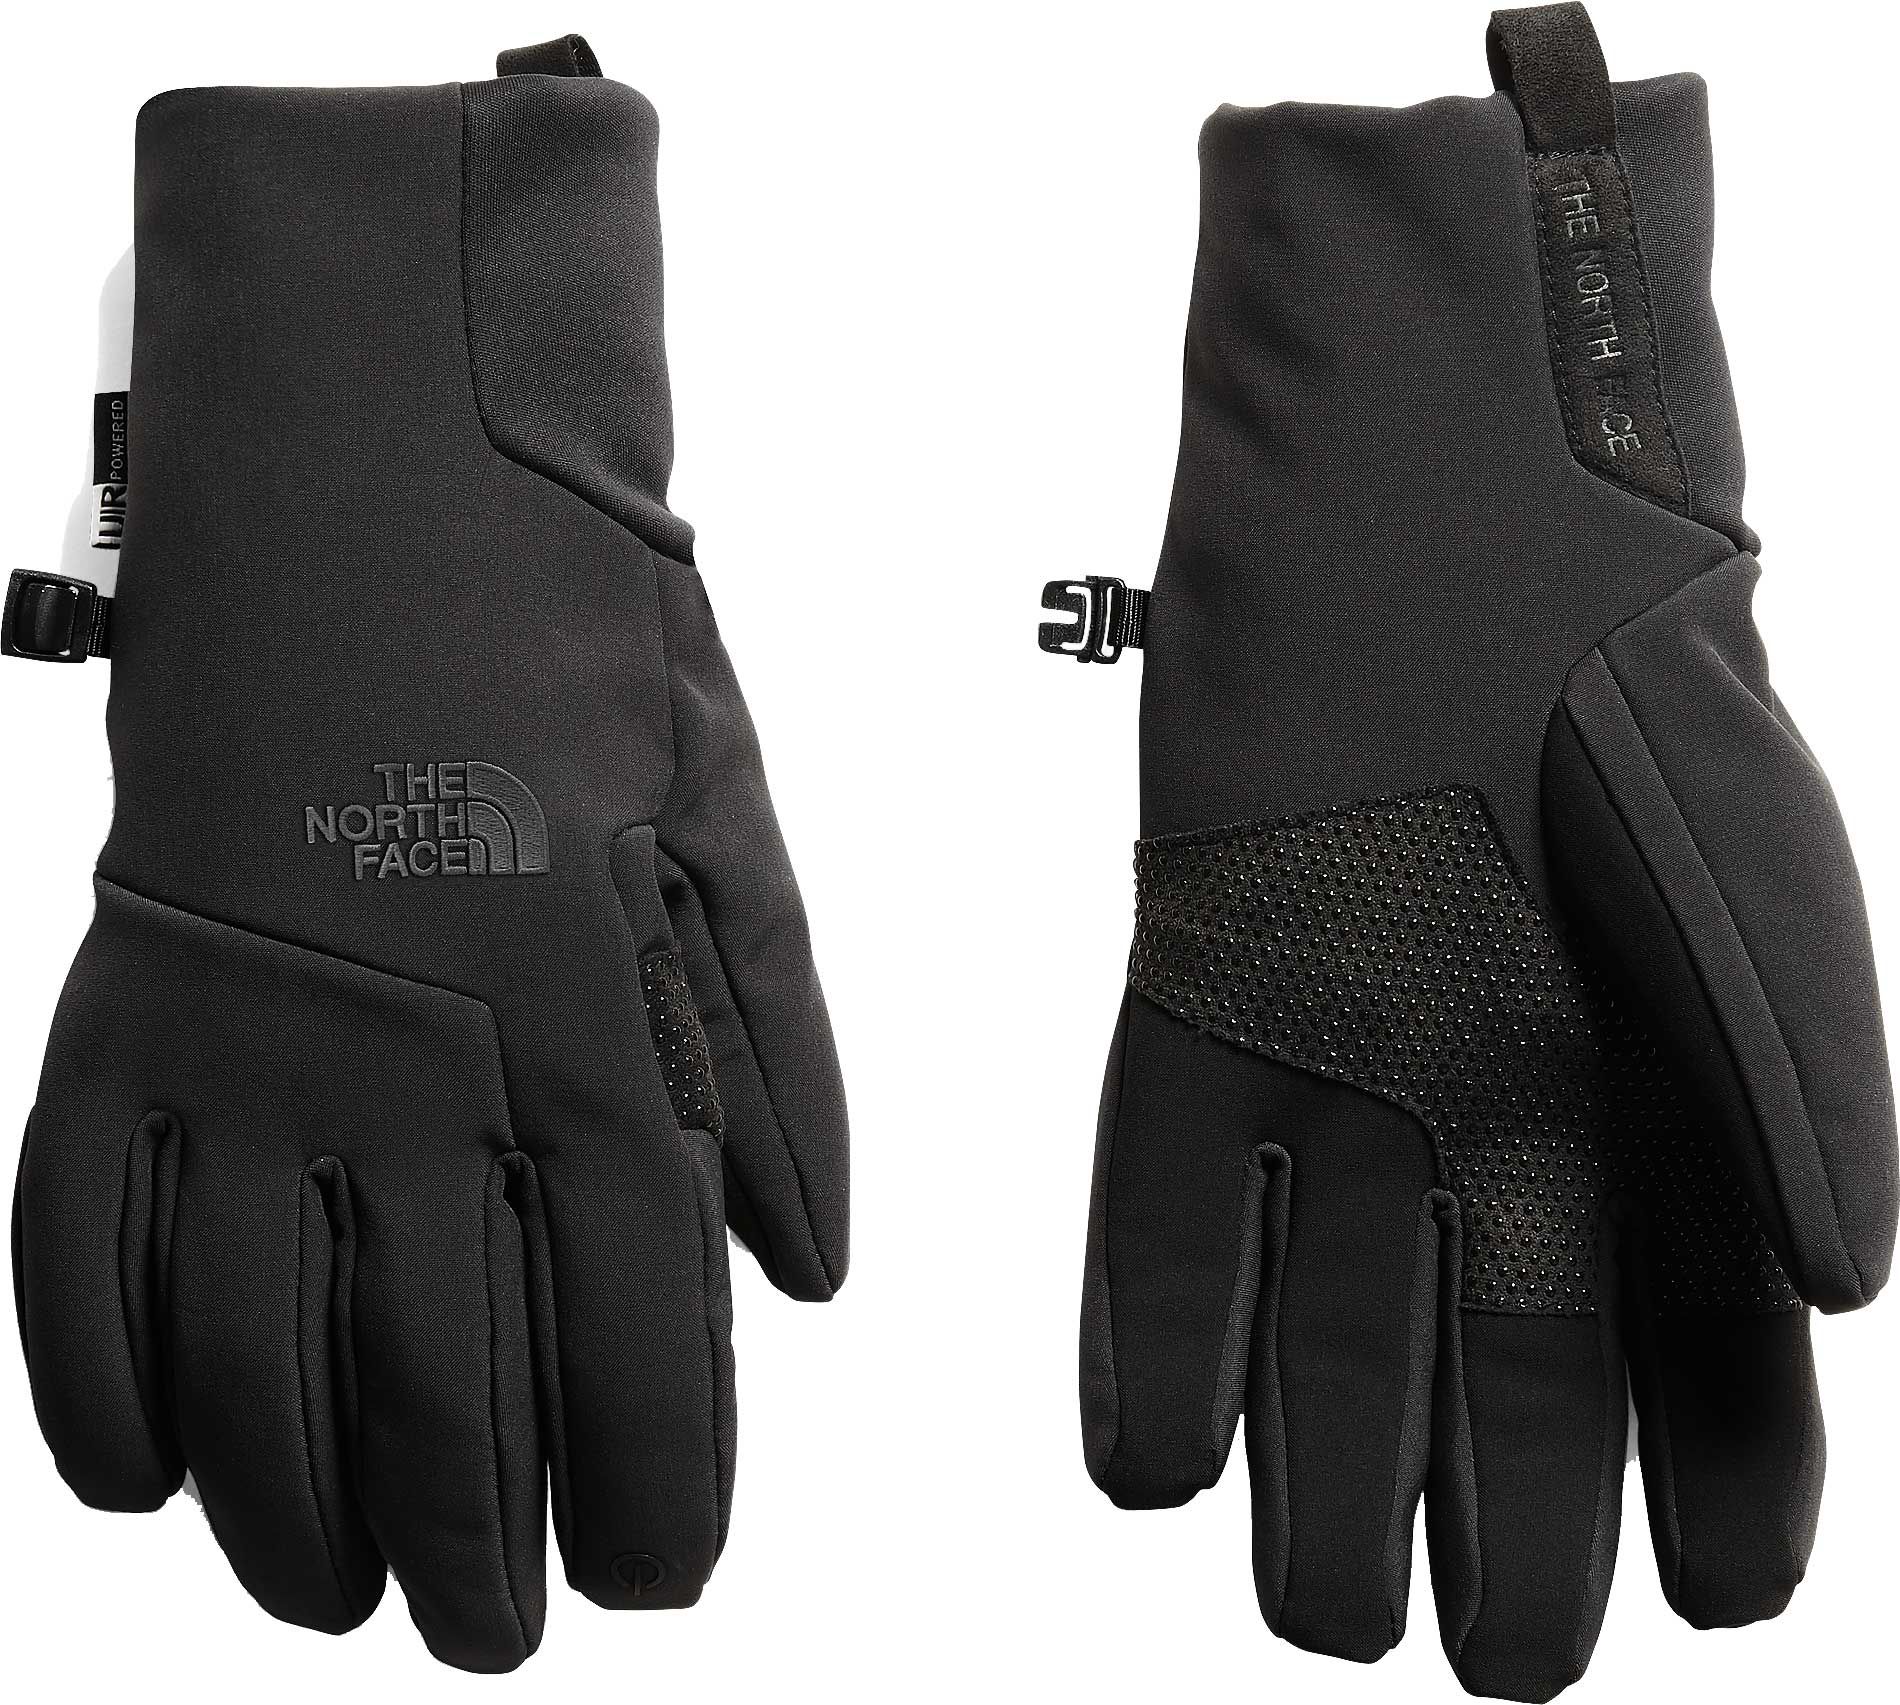 apex etip glove men's